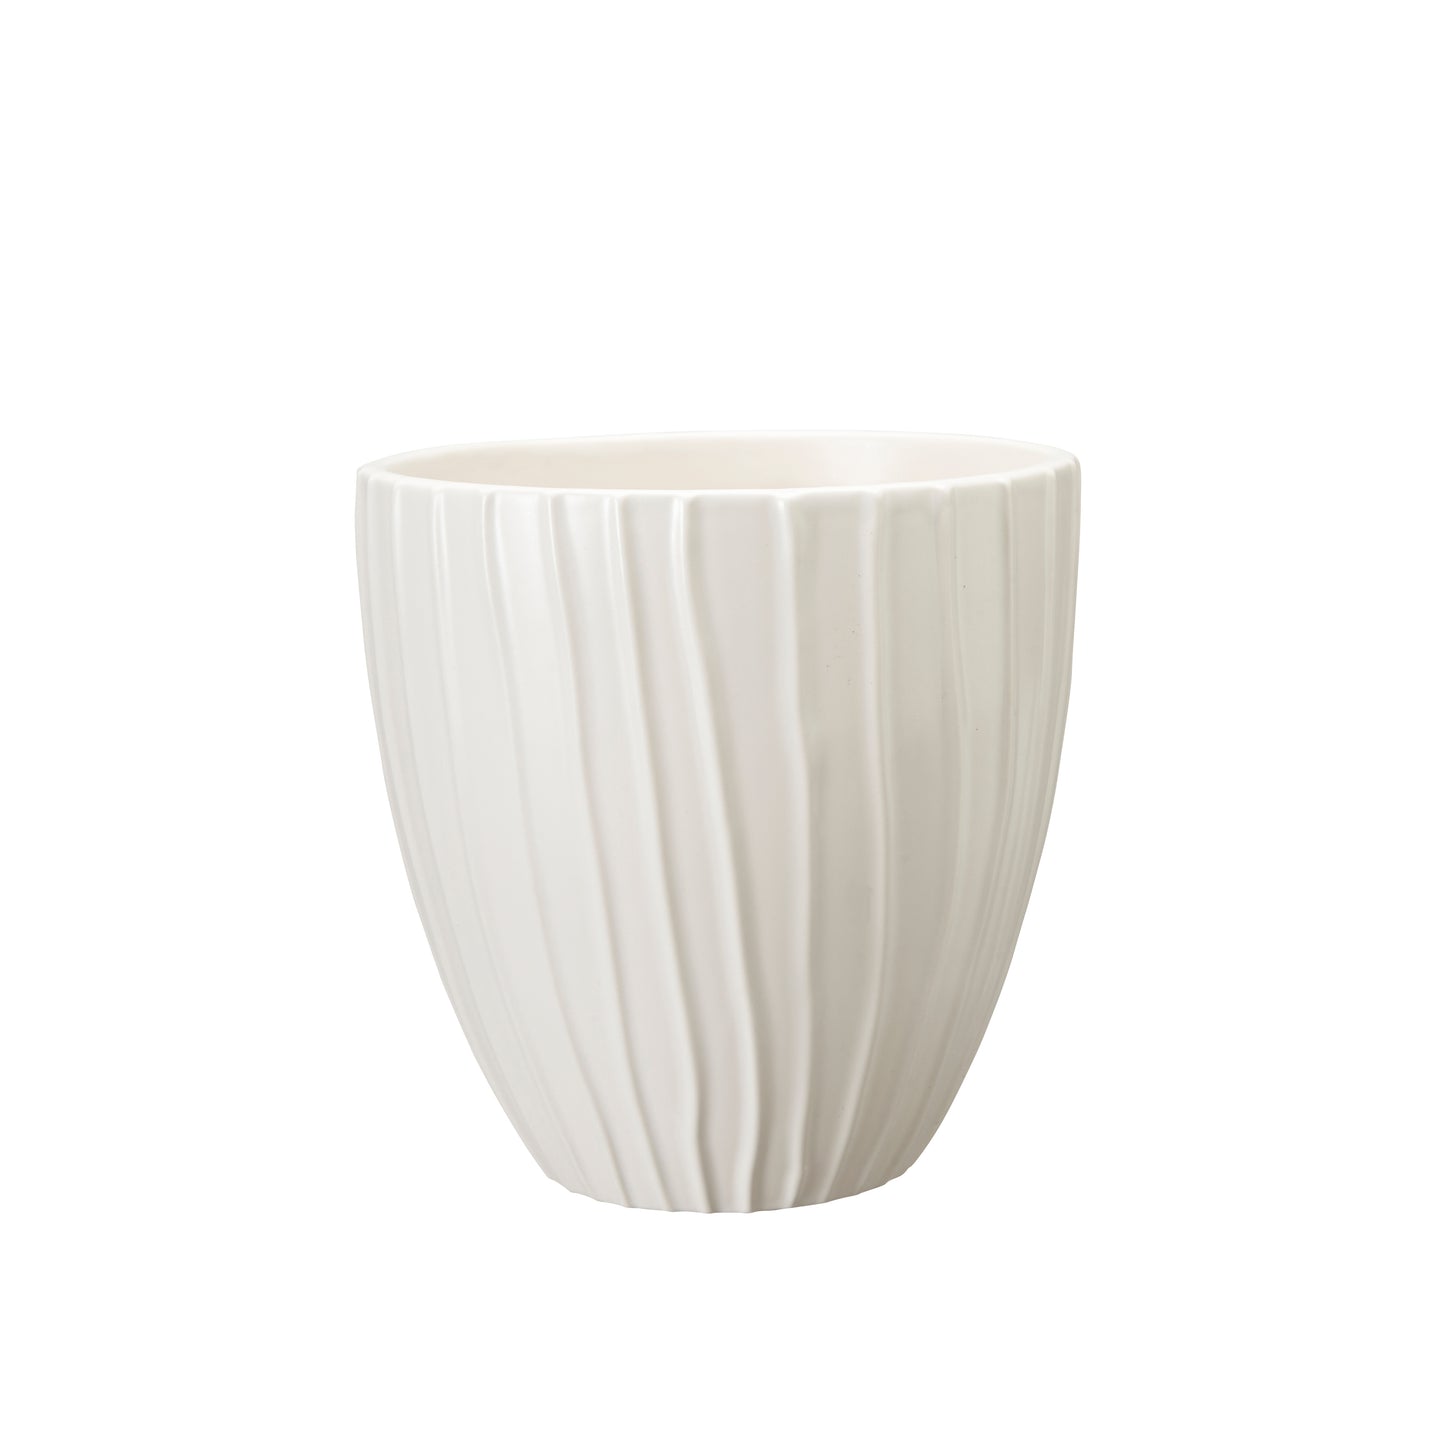 Wikholm Estrid Ceramic PLant Pot, Matt White